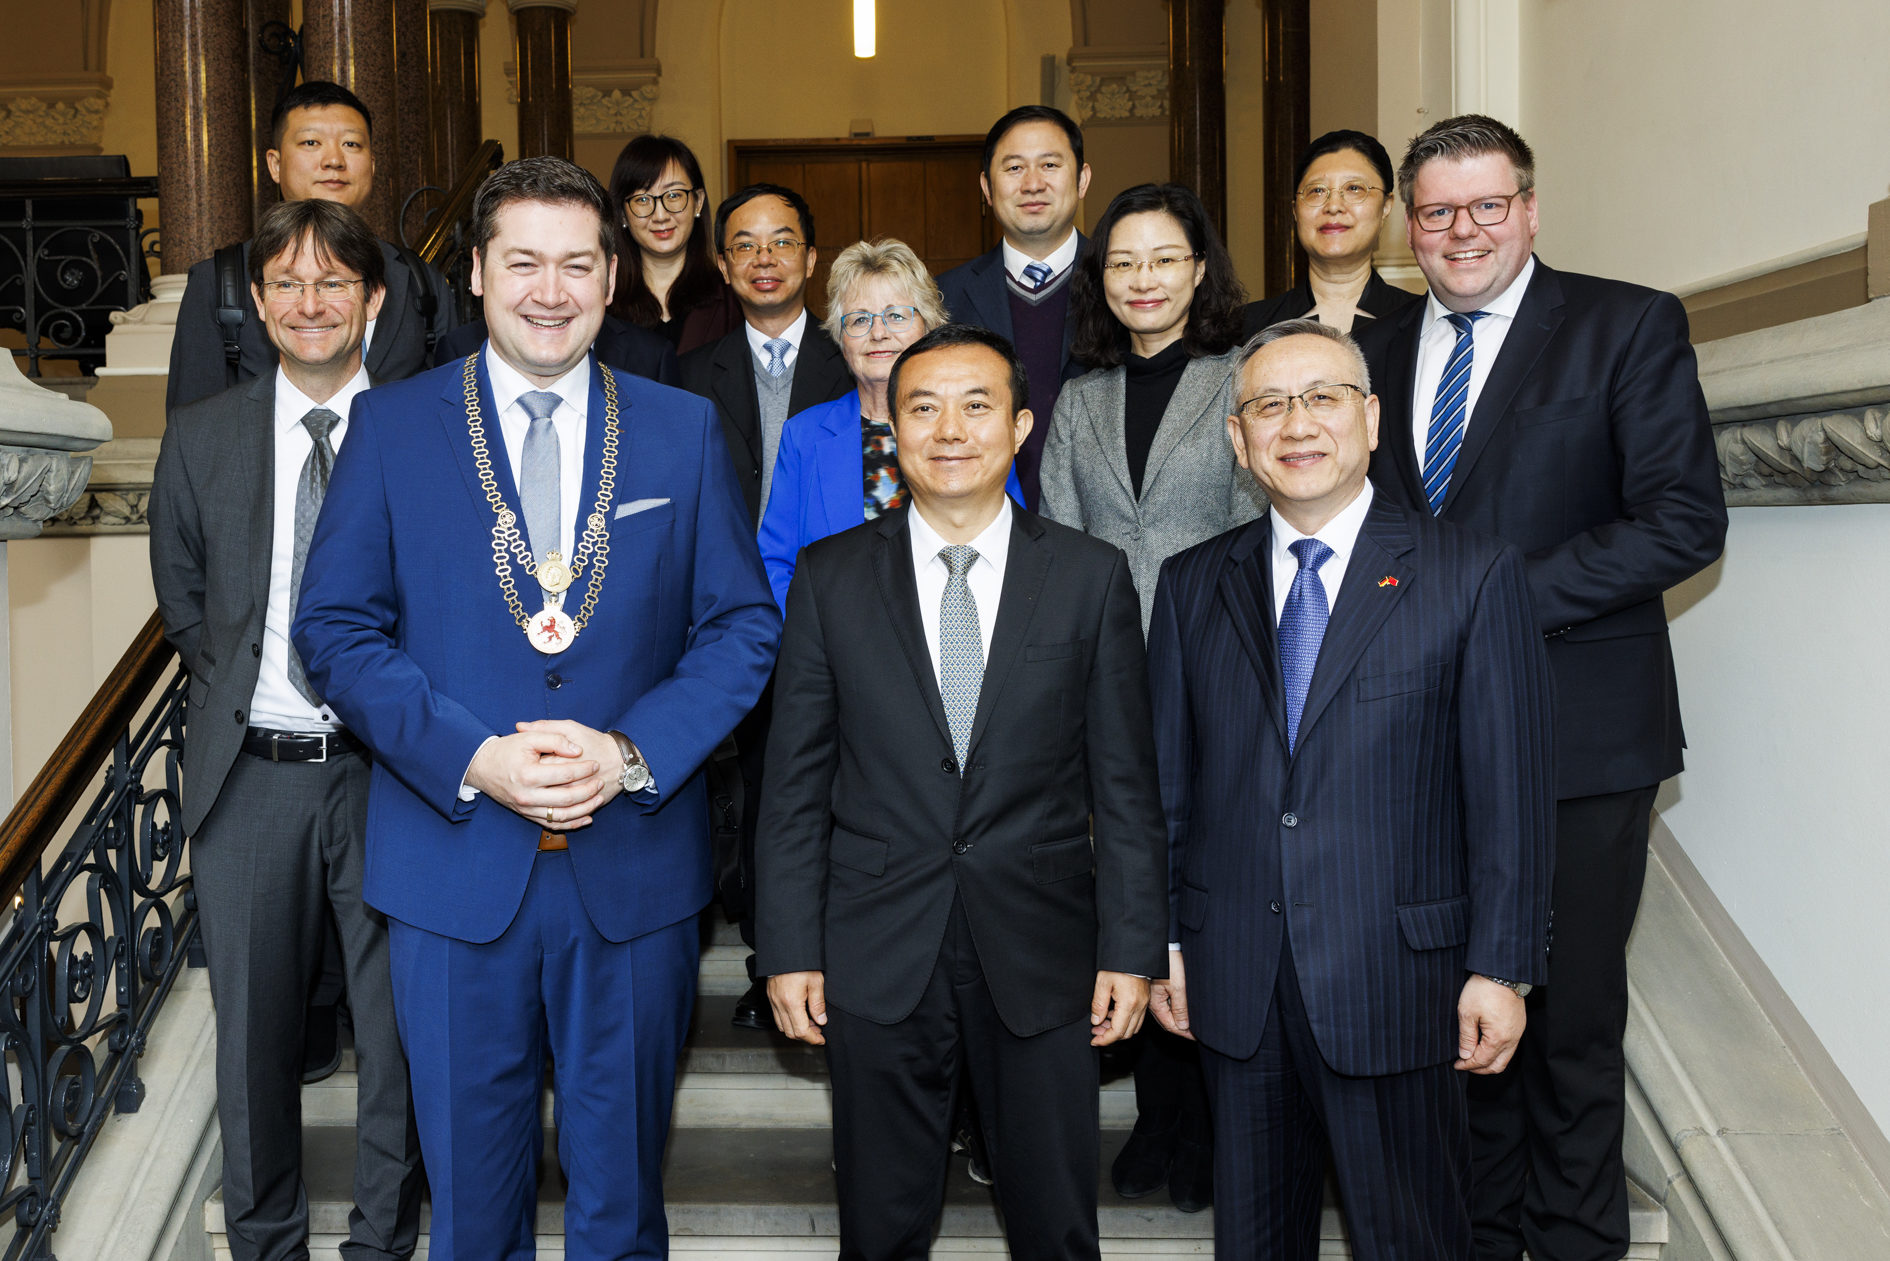 Delegation aus Zhuhai und Ratsvertreter aus Braunschweig mit Oberbürgermeister Dr. Kornblum, Delegationsleiter Chen Yong und Generalkonsul Cong Wu. (Wird bei Klick vergrößert)